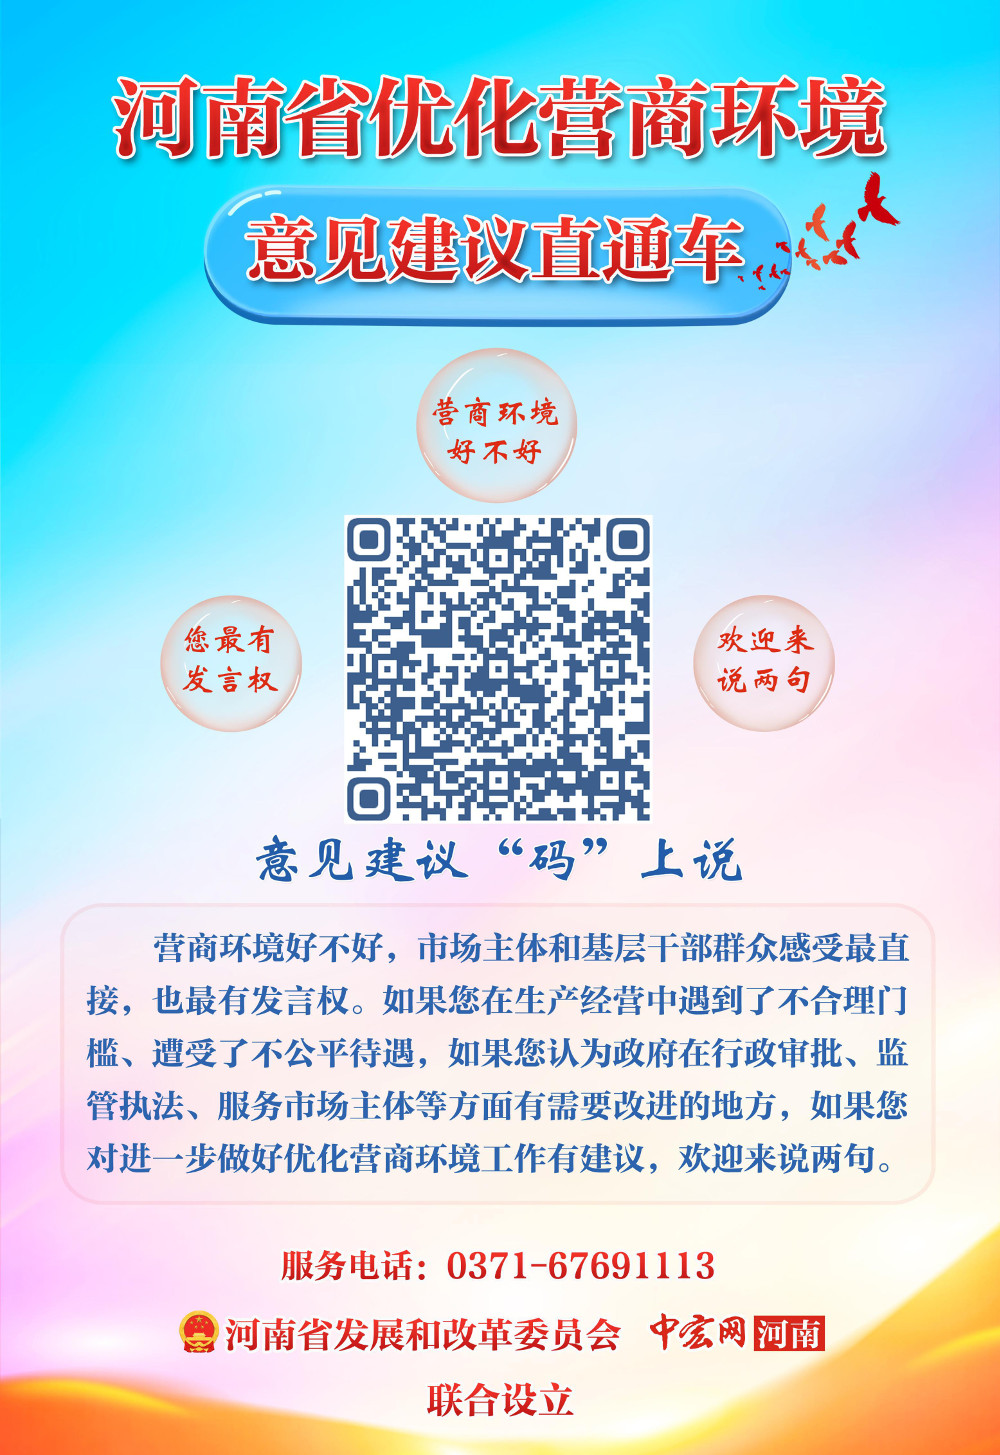 2.河南省优化营商环境意见建议直通车二维码海报.jpeg